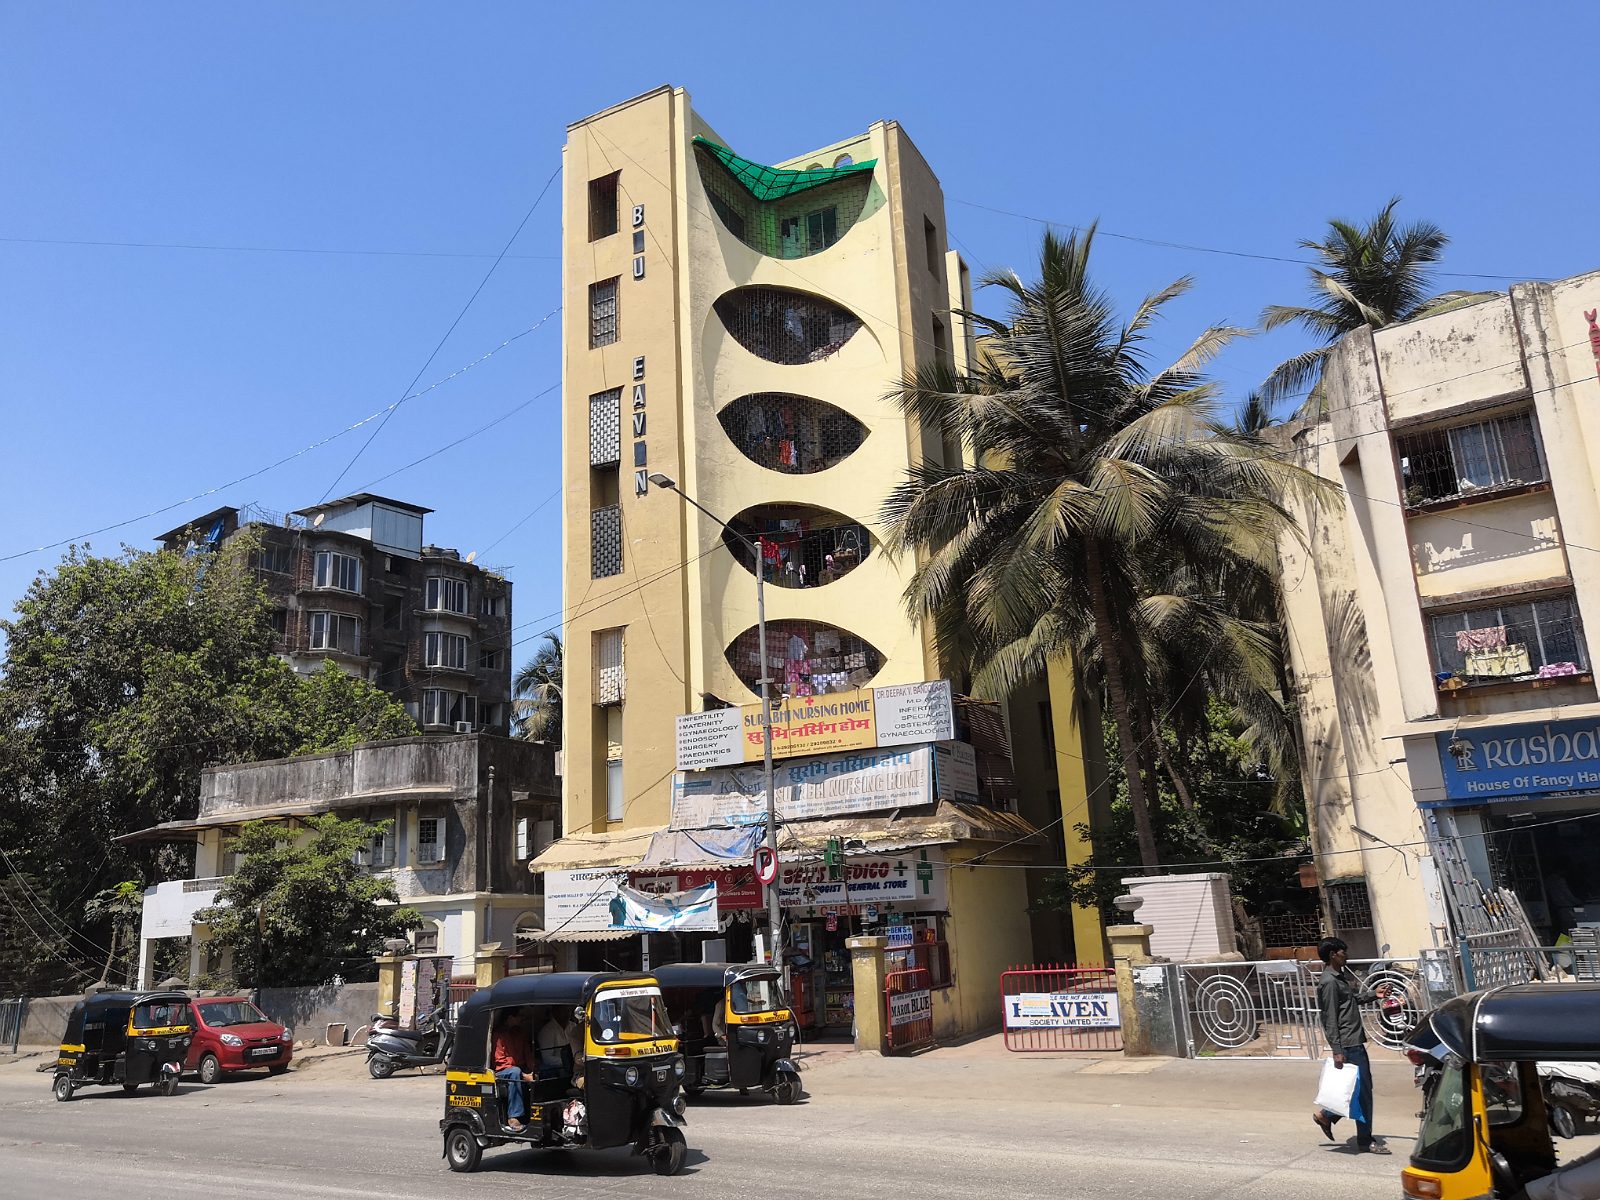 21. Ciekawy budynek w Mumbaju.